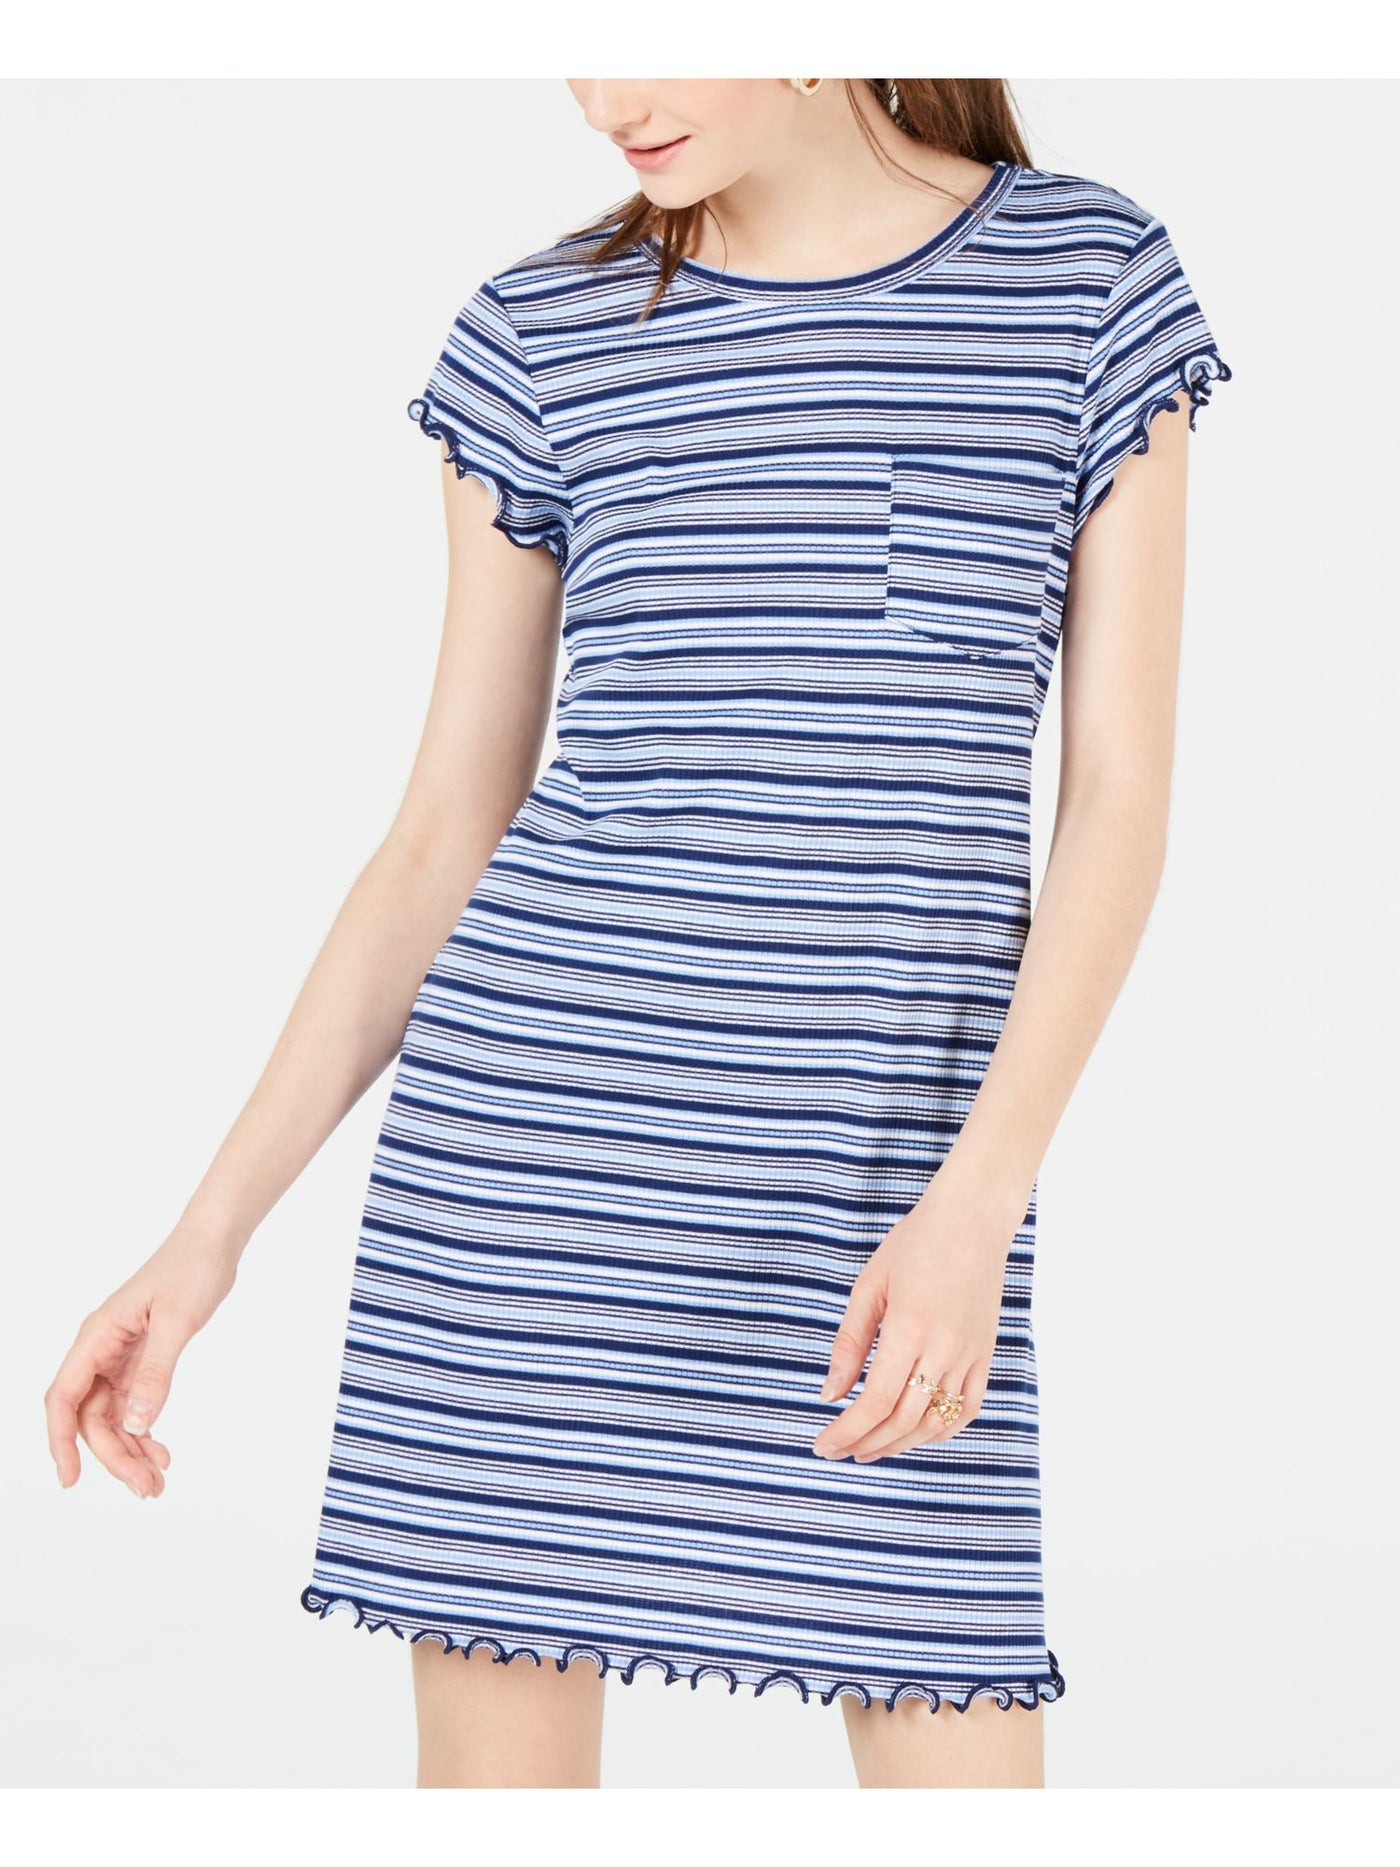 ULTRA FLIRT Womens Blue Striped Short Sleeve Short Dress Juniors Size: XS